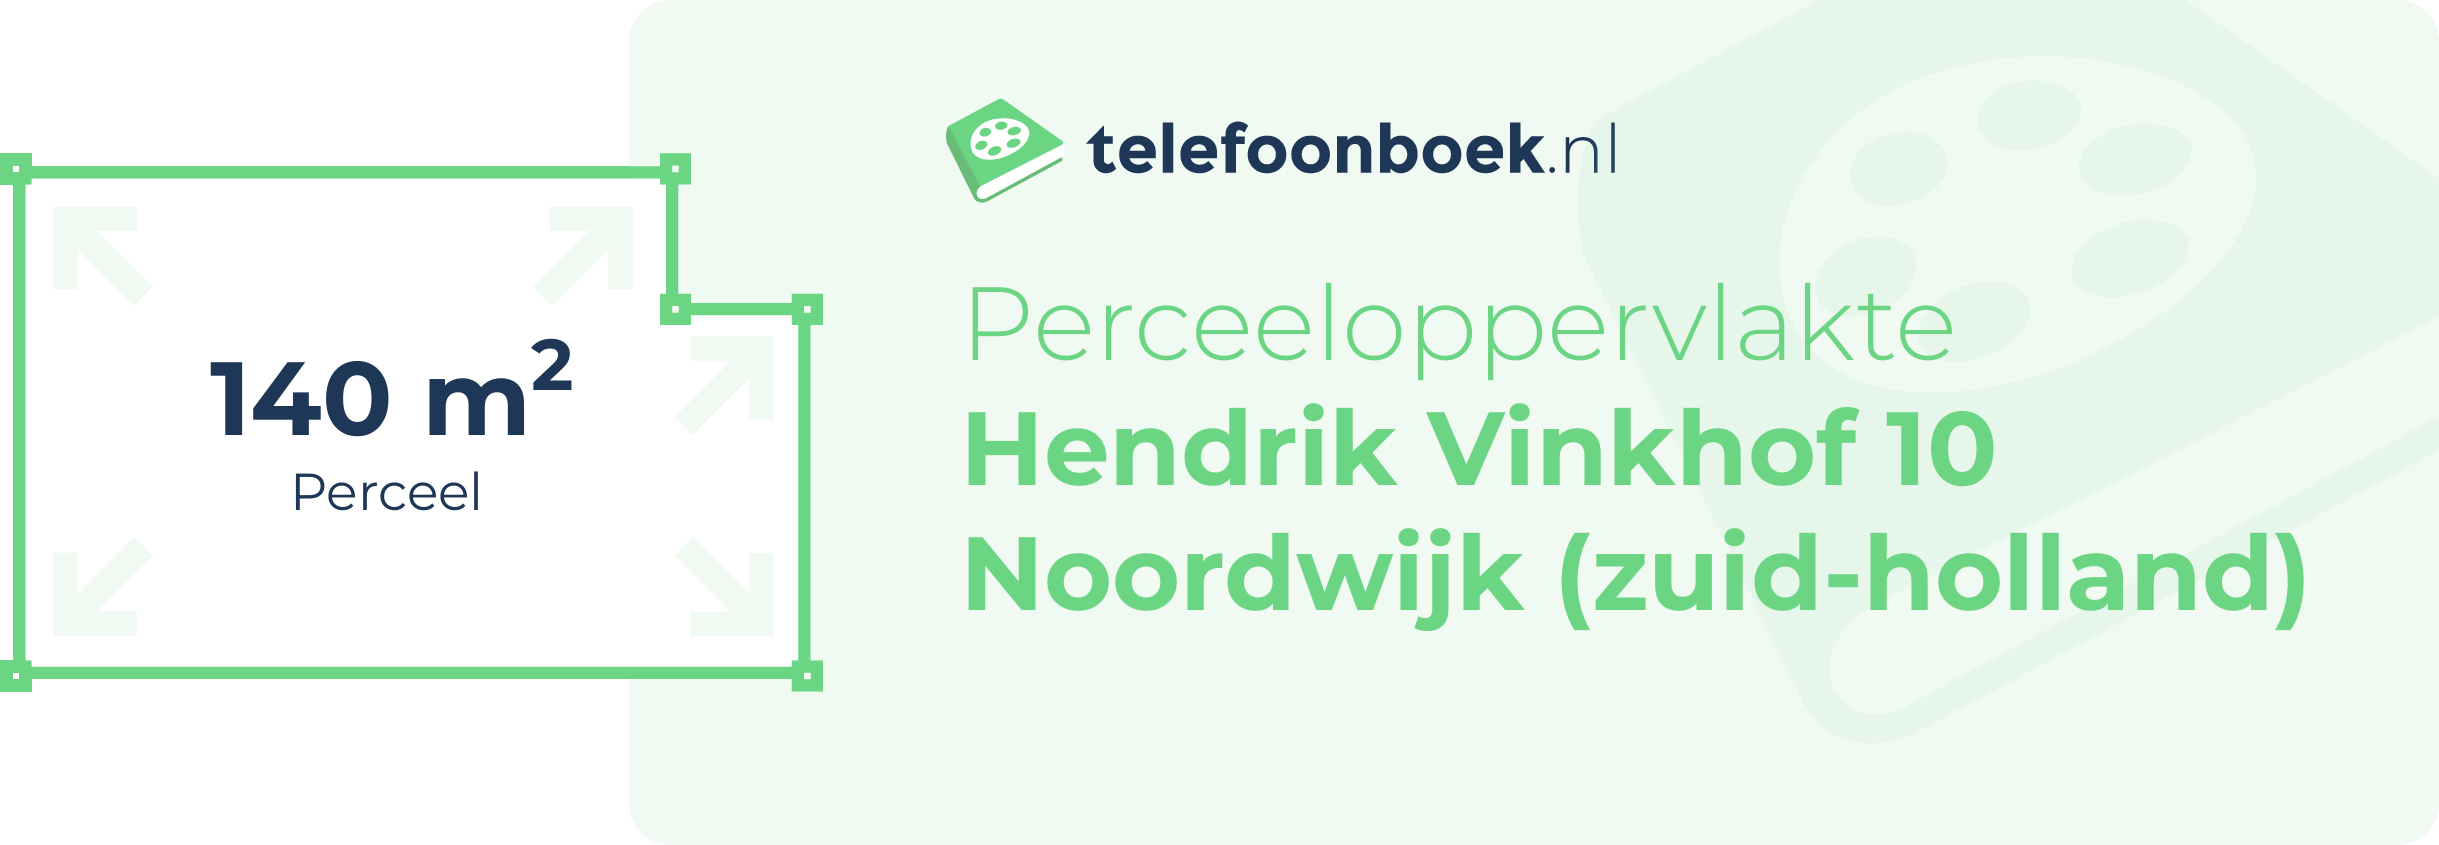 Perceeloppervlakte Hendrik Vinkhof 10 Noordwijk (Zuid-Holland)